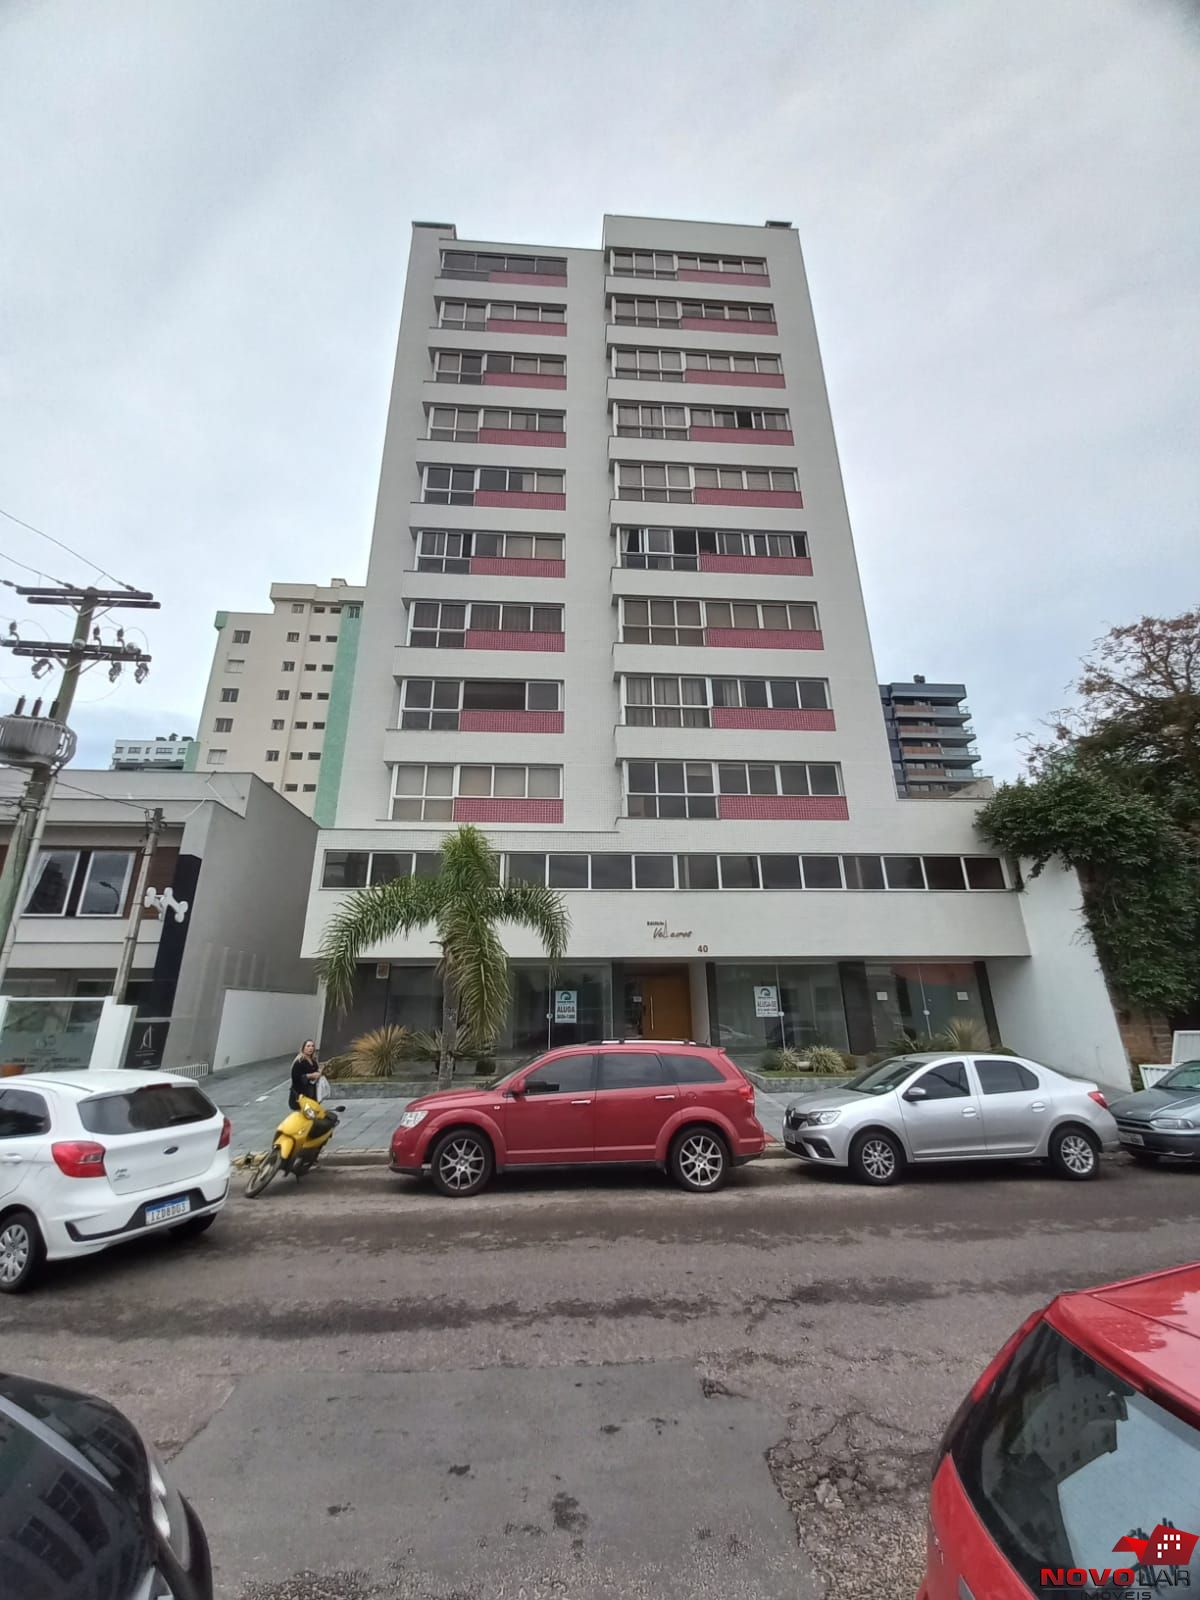 Cobertura com 3 dormitórios em Torres, no bairro Centro à venda